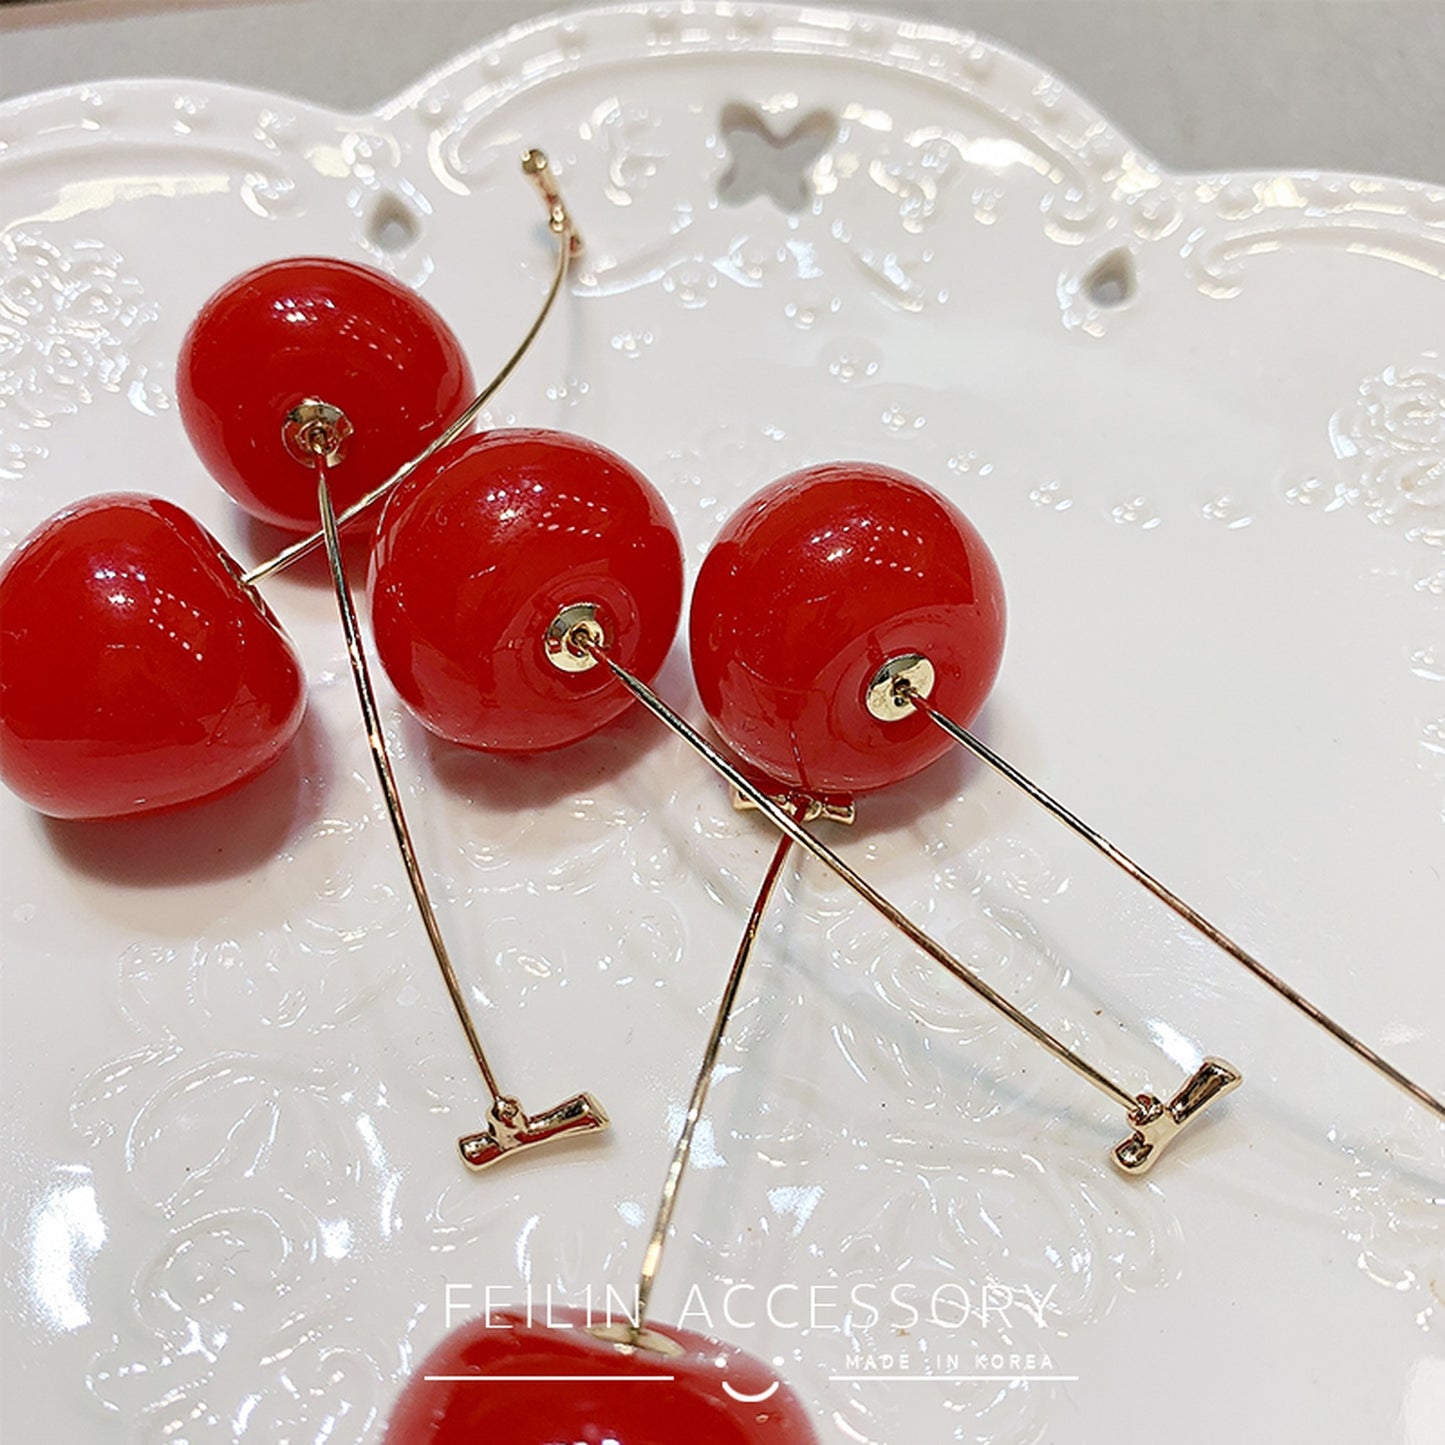 Cherry earrings 5759